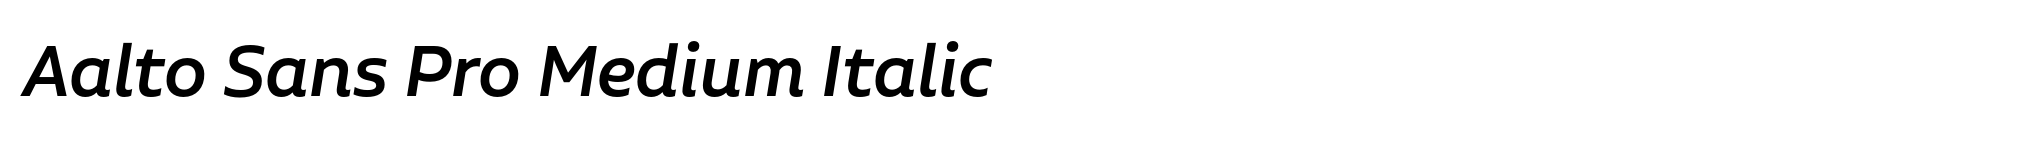 Aalto Sans Pro Medium Italic image